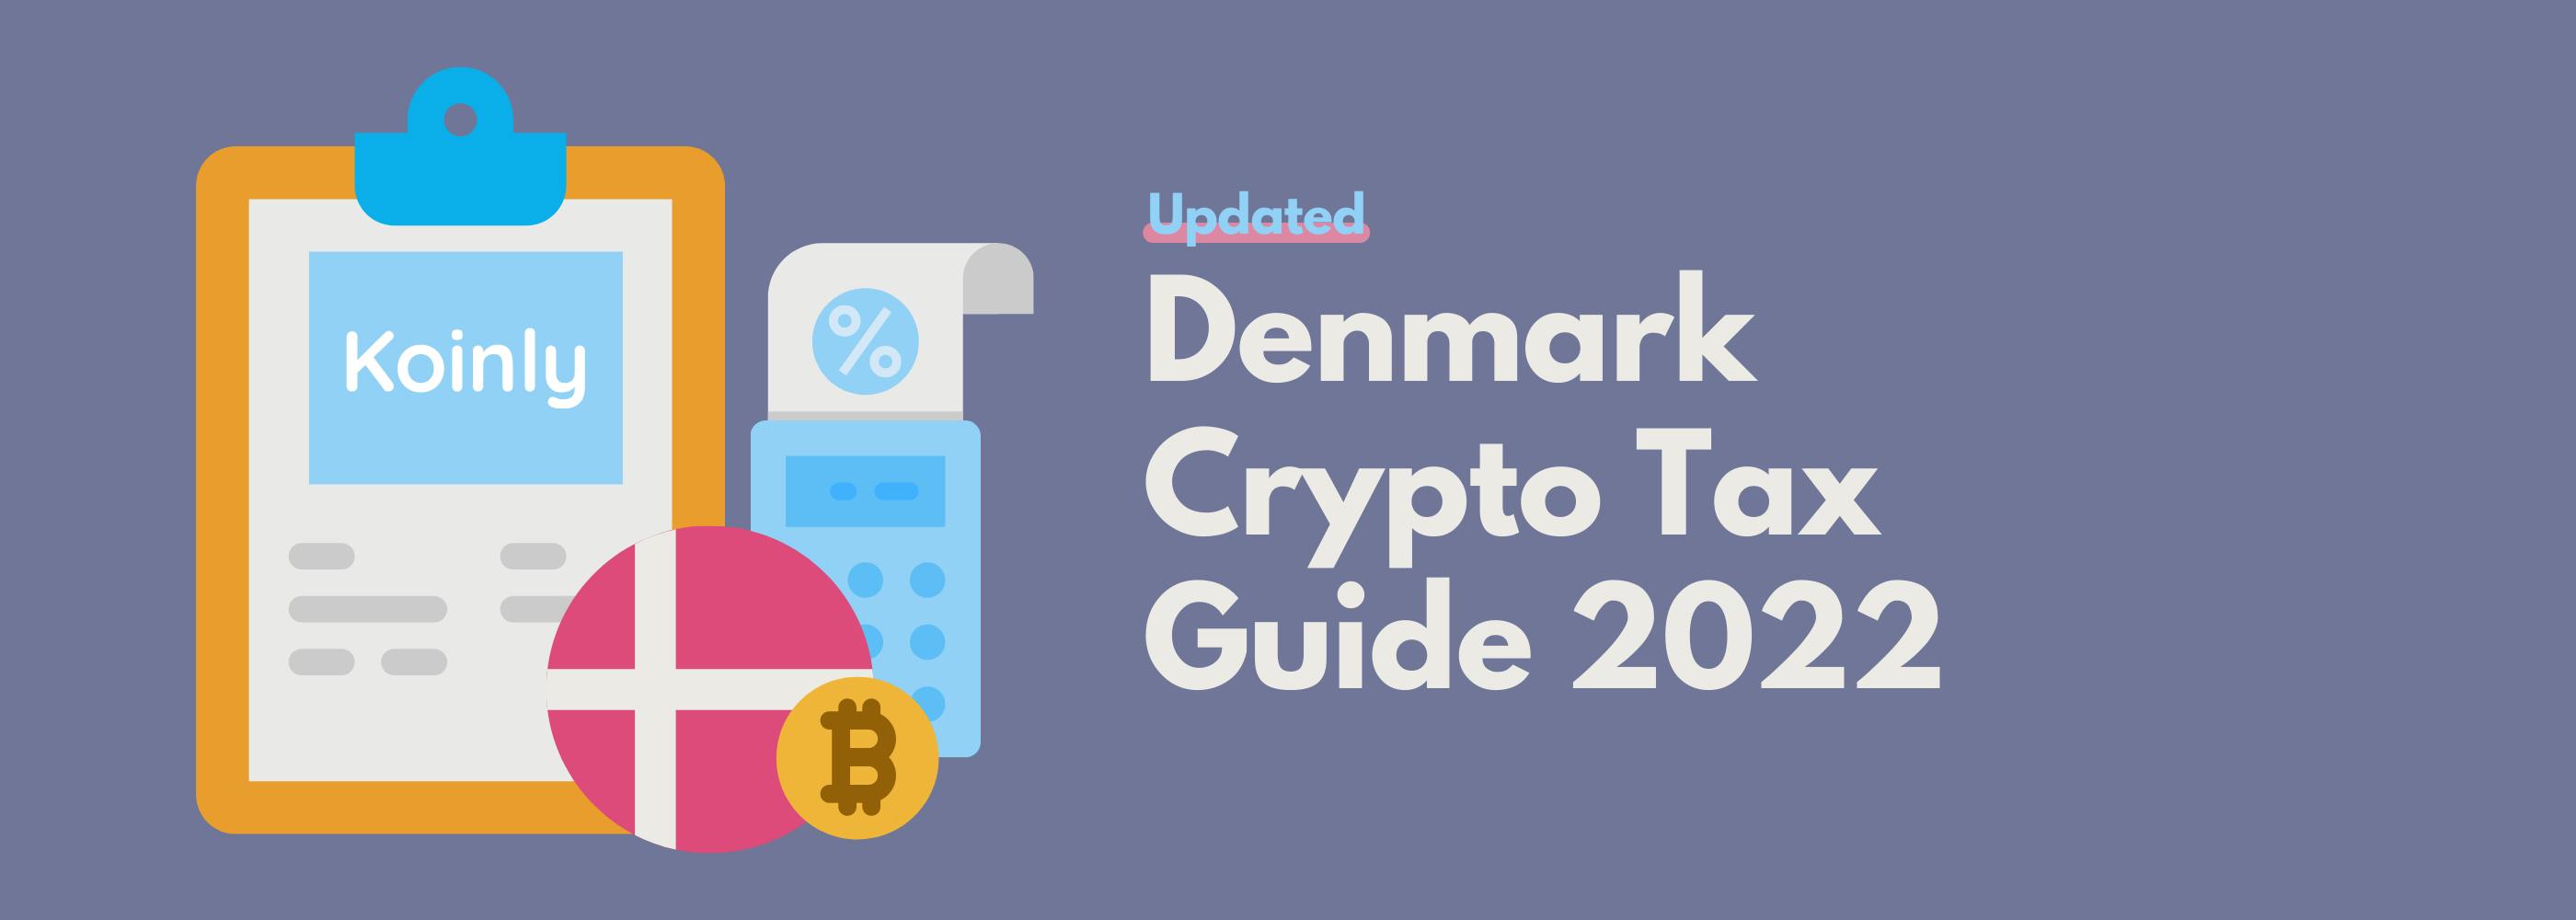 Denmark Crypto Tax Guide